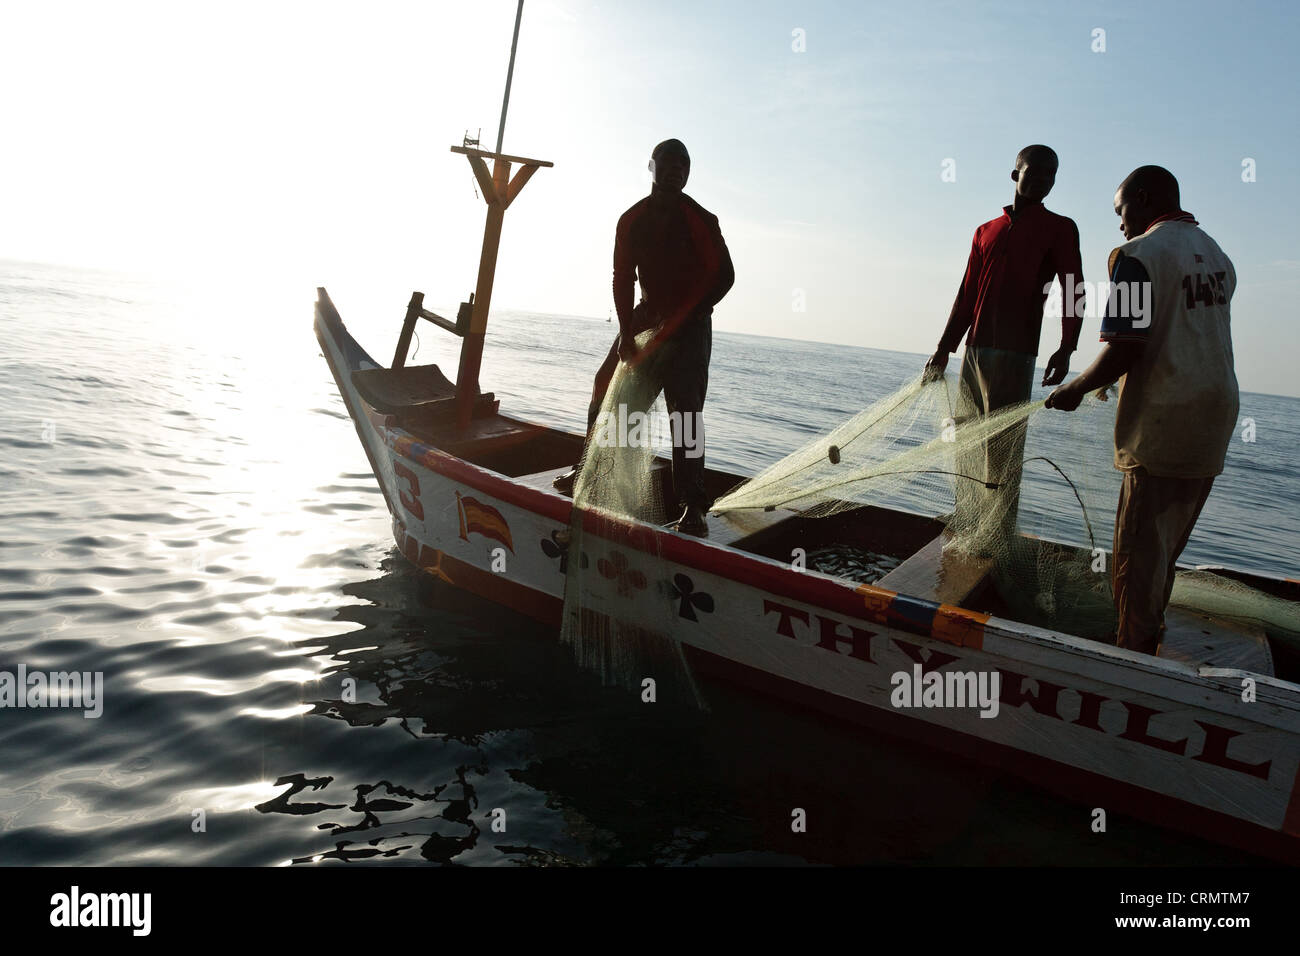 Tirar de los pescadores en sus redes mientras pescan en la costa cerca de Cape Coast, Ghana, Región Central. Foto de stock